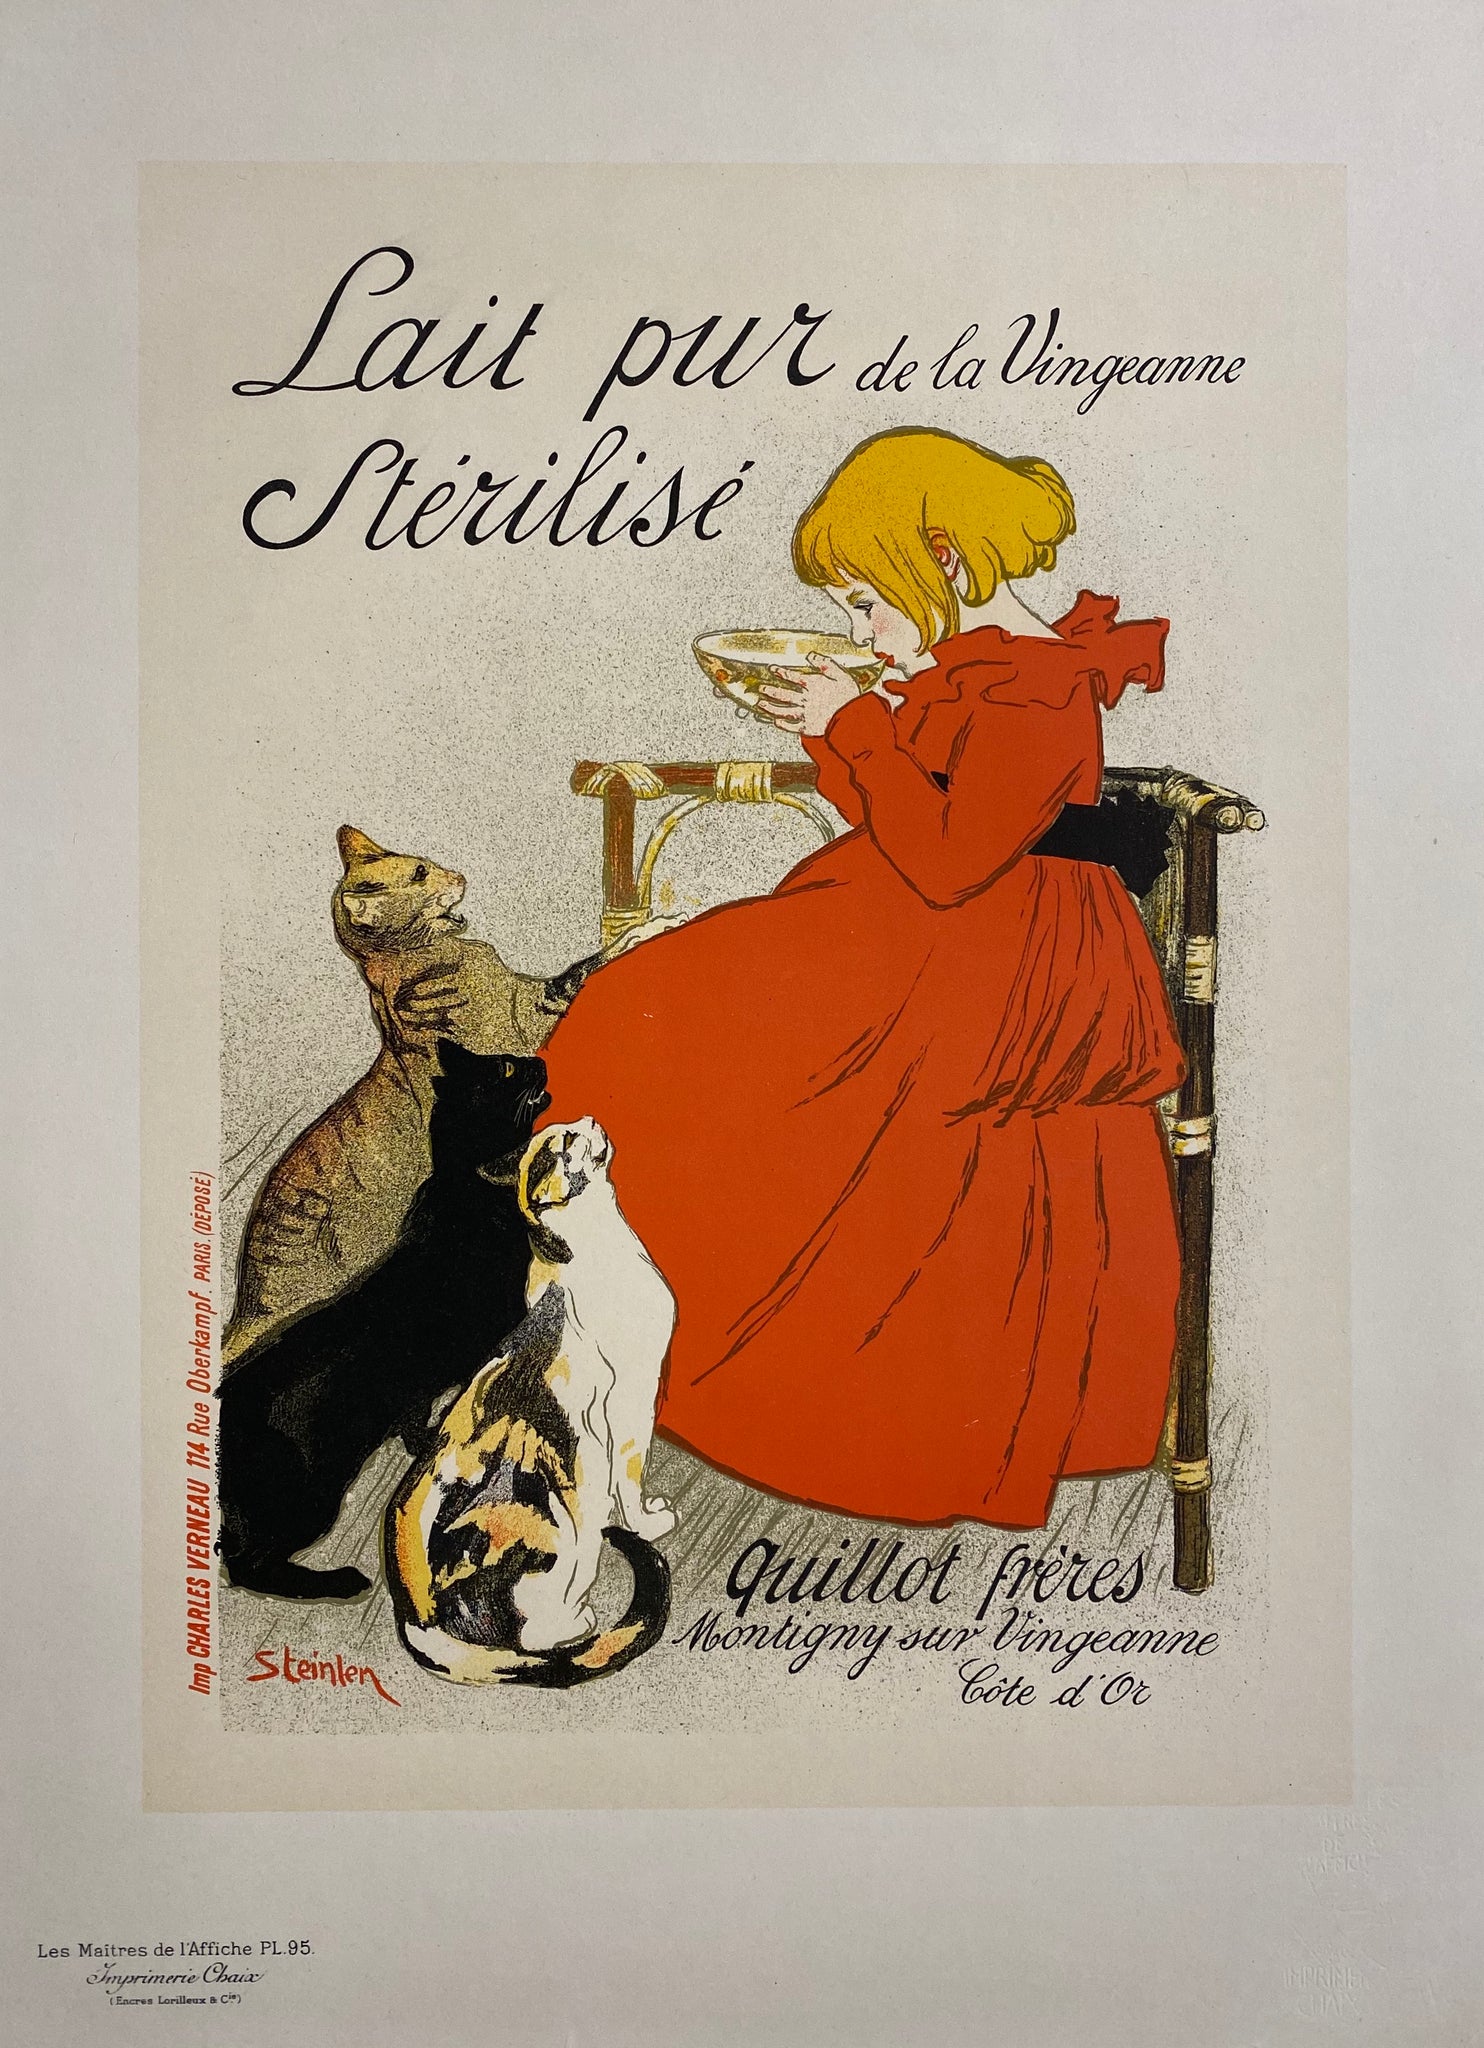 Maitre de l'affiche planche 95 - Lait Pur Stérilisé Par Steinlen, 1897